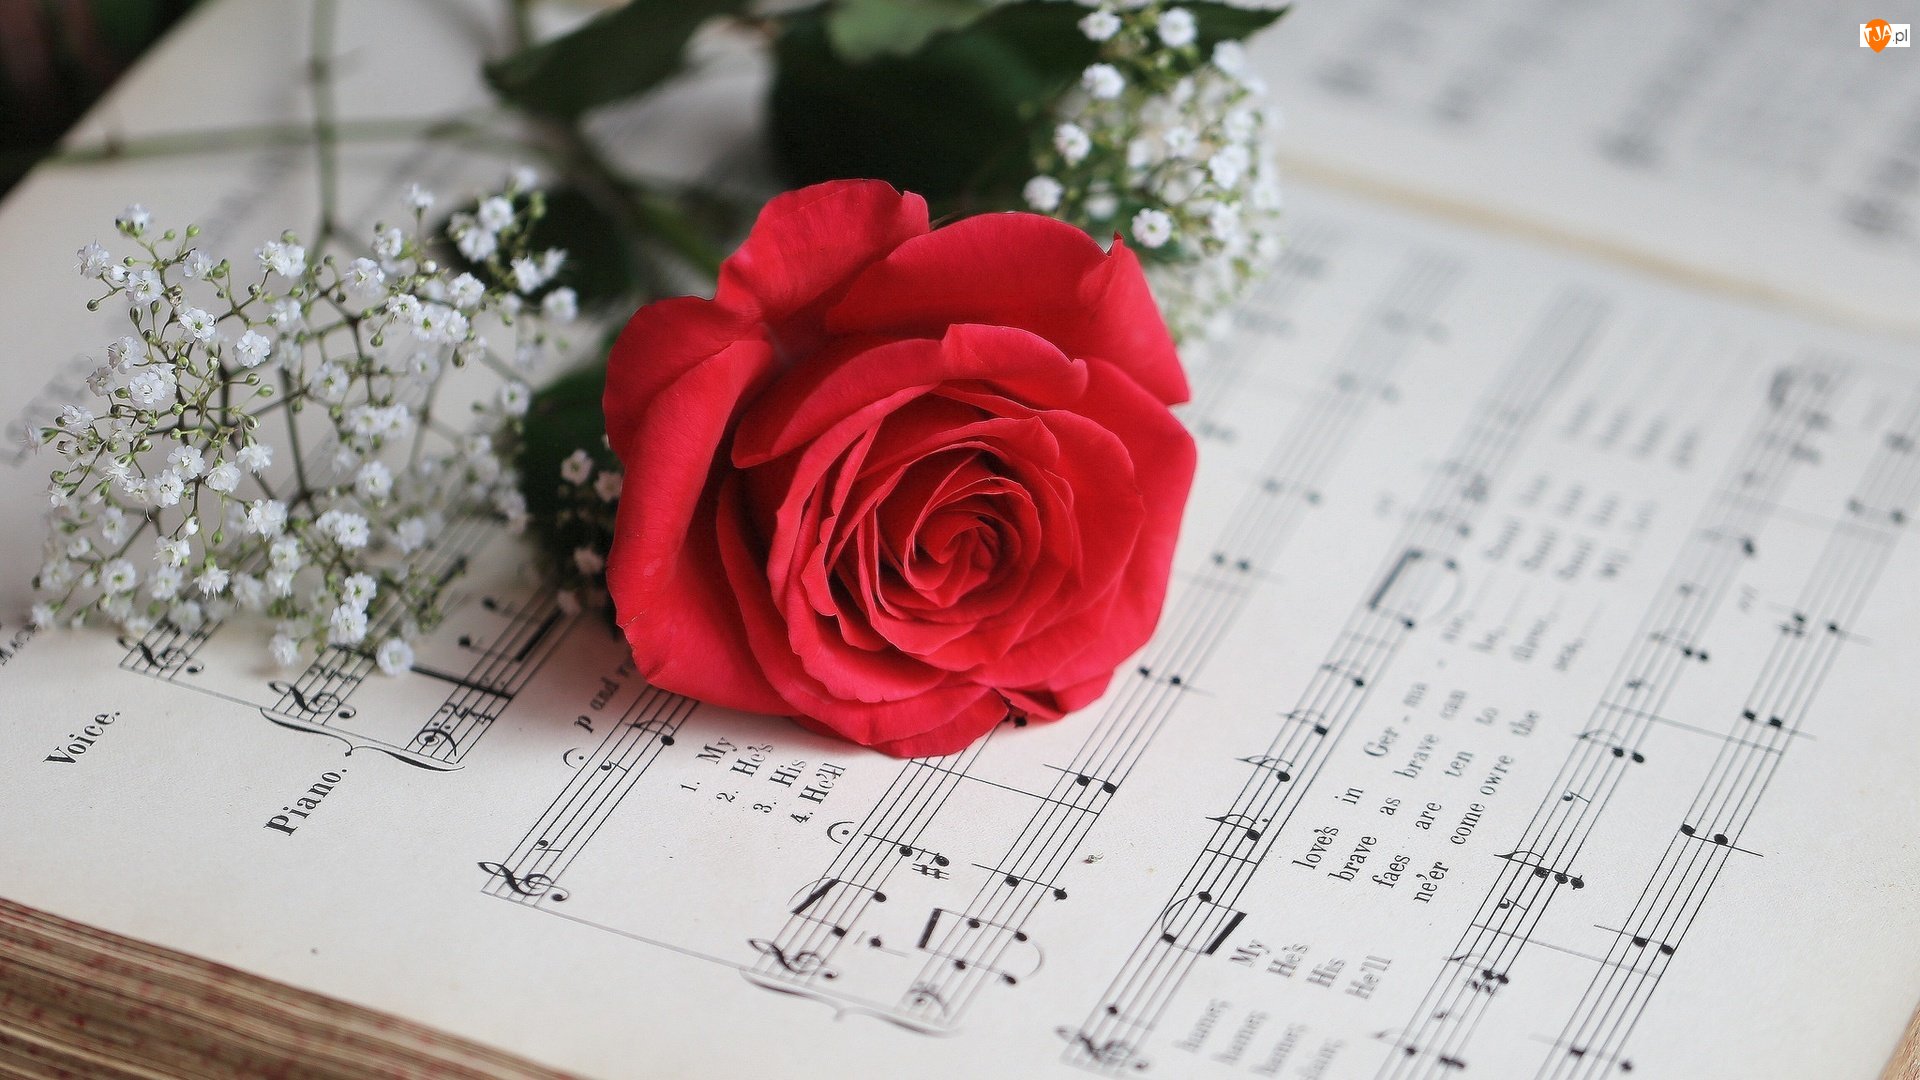 Нежная песня без слов. Ноты и цветы. Цветы для музыканта. Красивый фон с нотами и цветами. Музыкальный букет цветов.